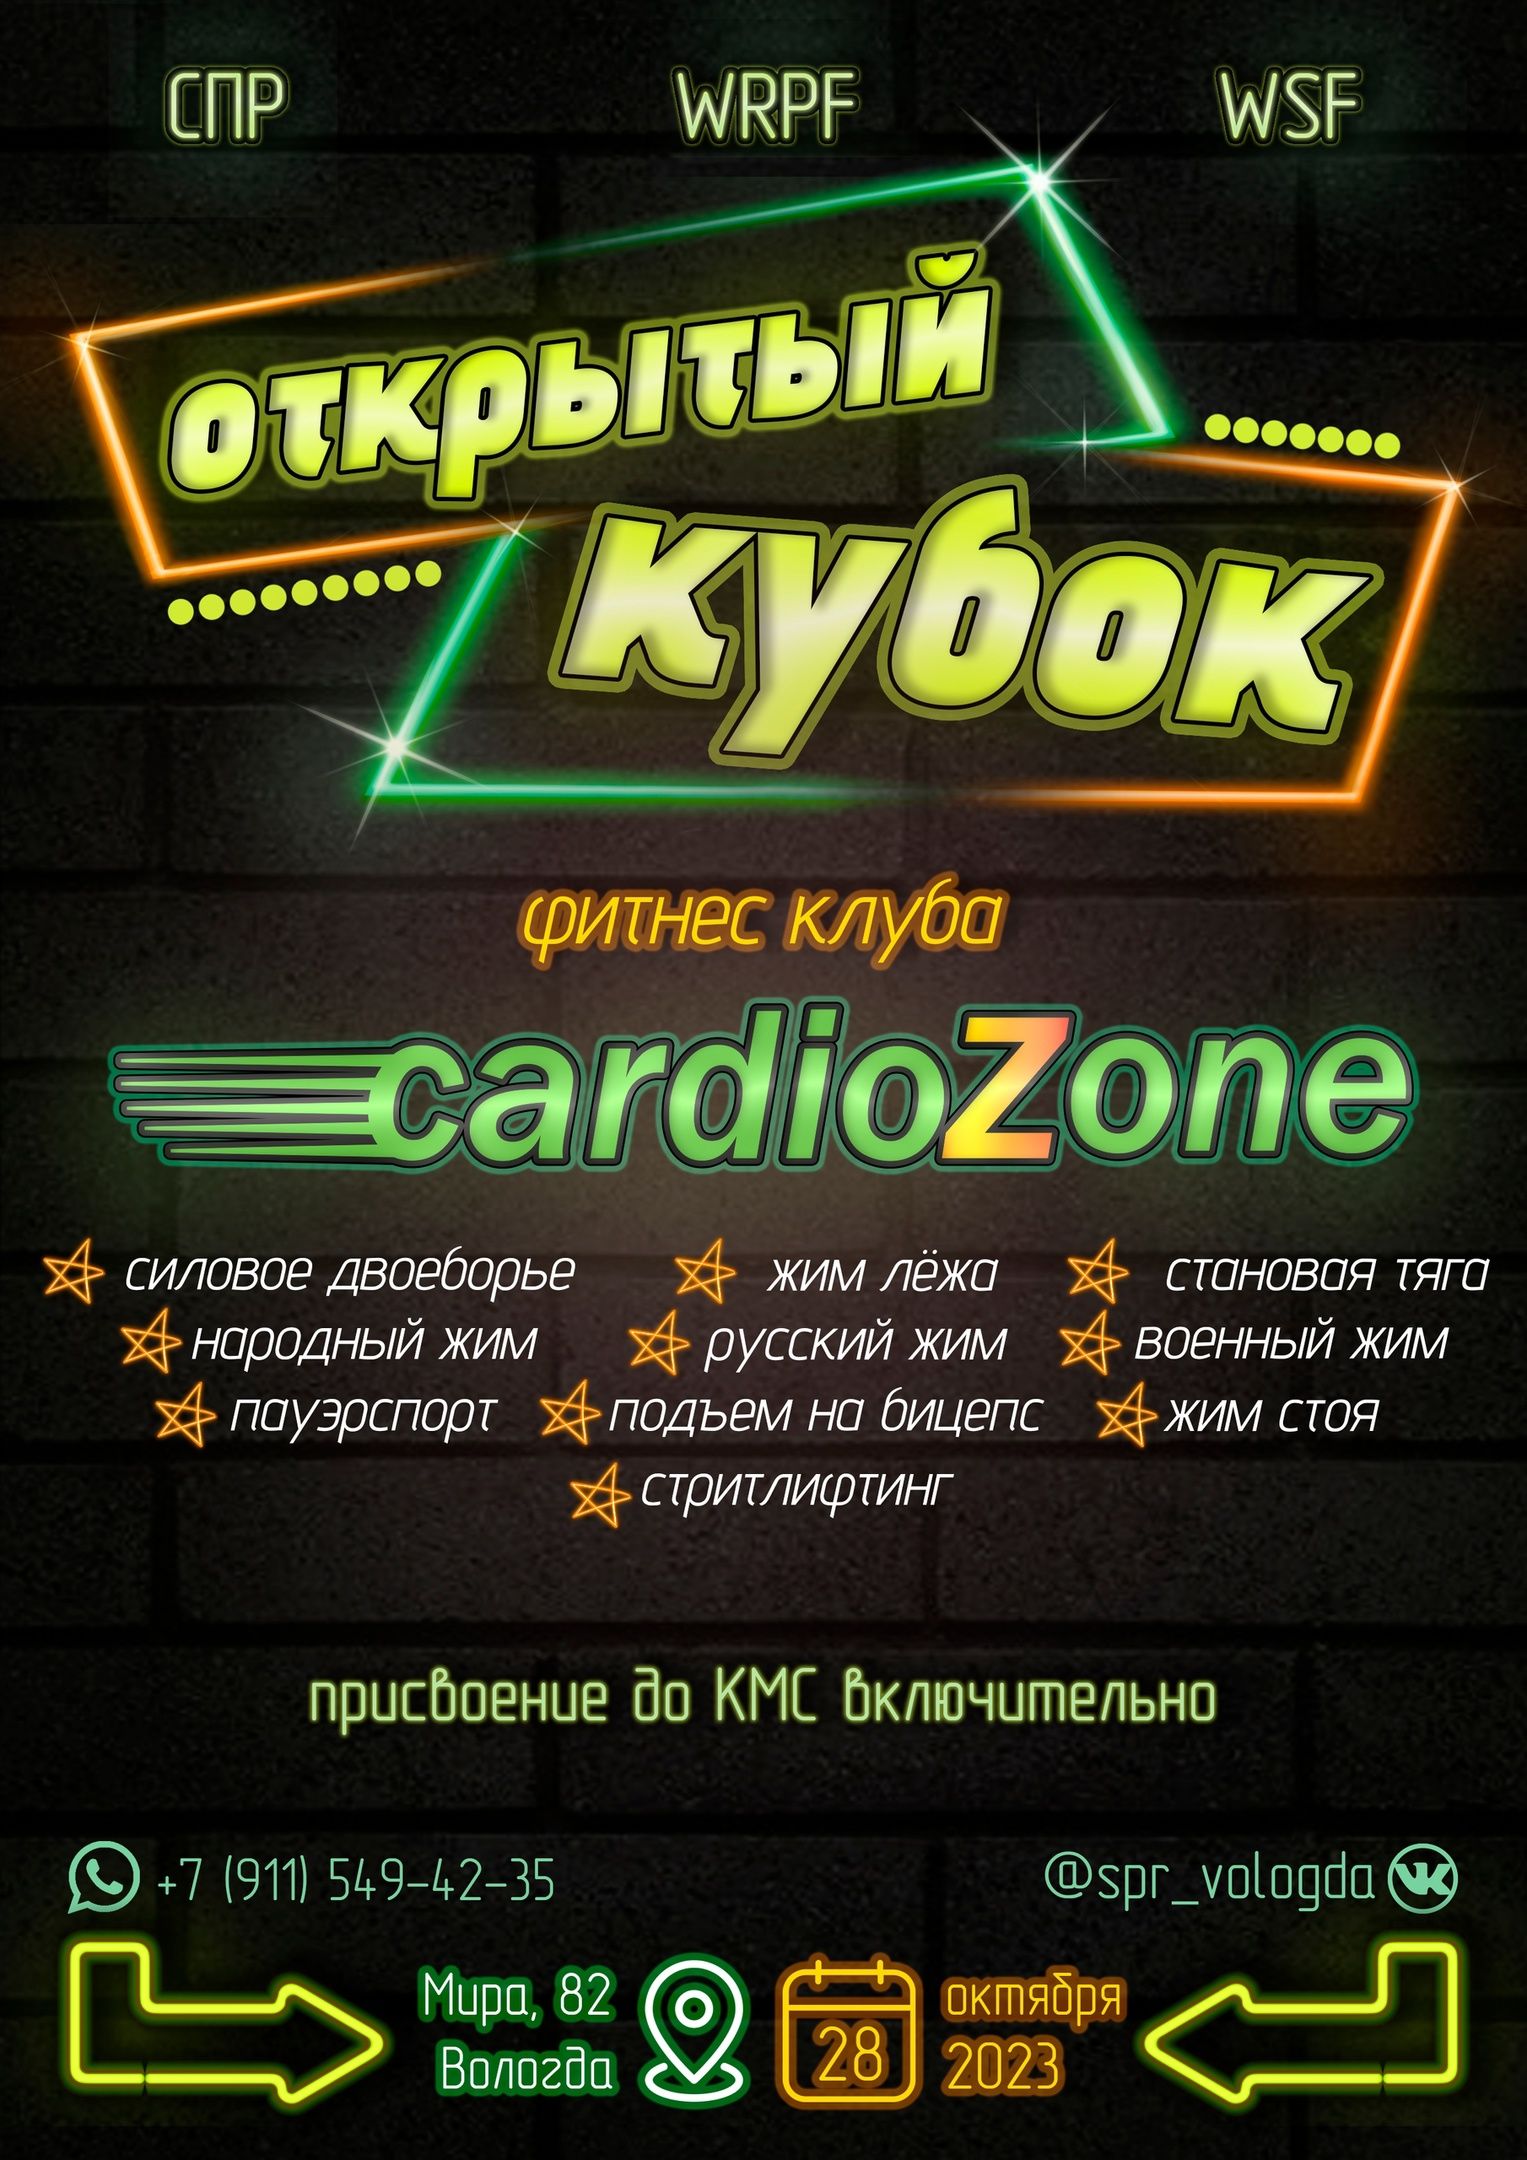 Кубок CardioZone WRPF СПР WSF, Вологда, 28.10.2023